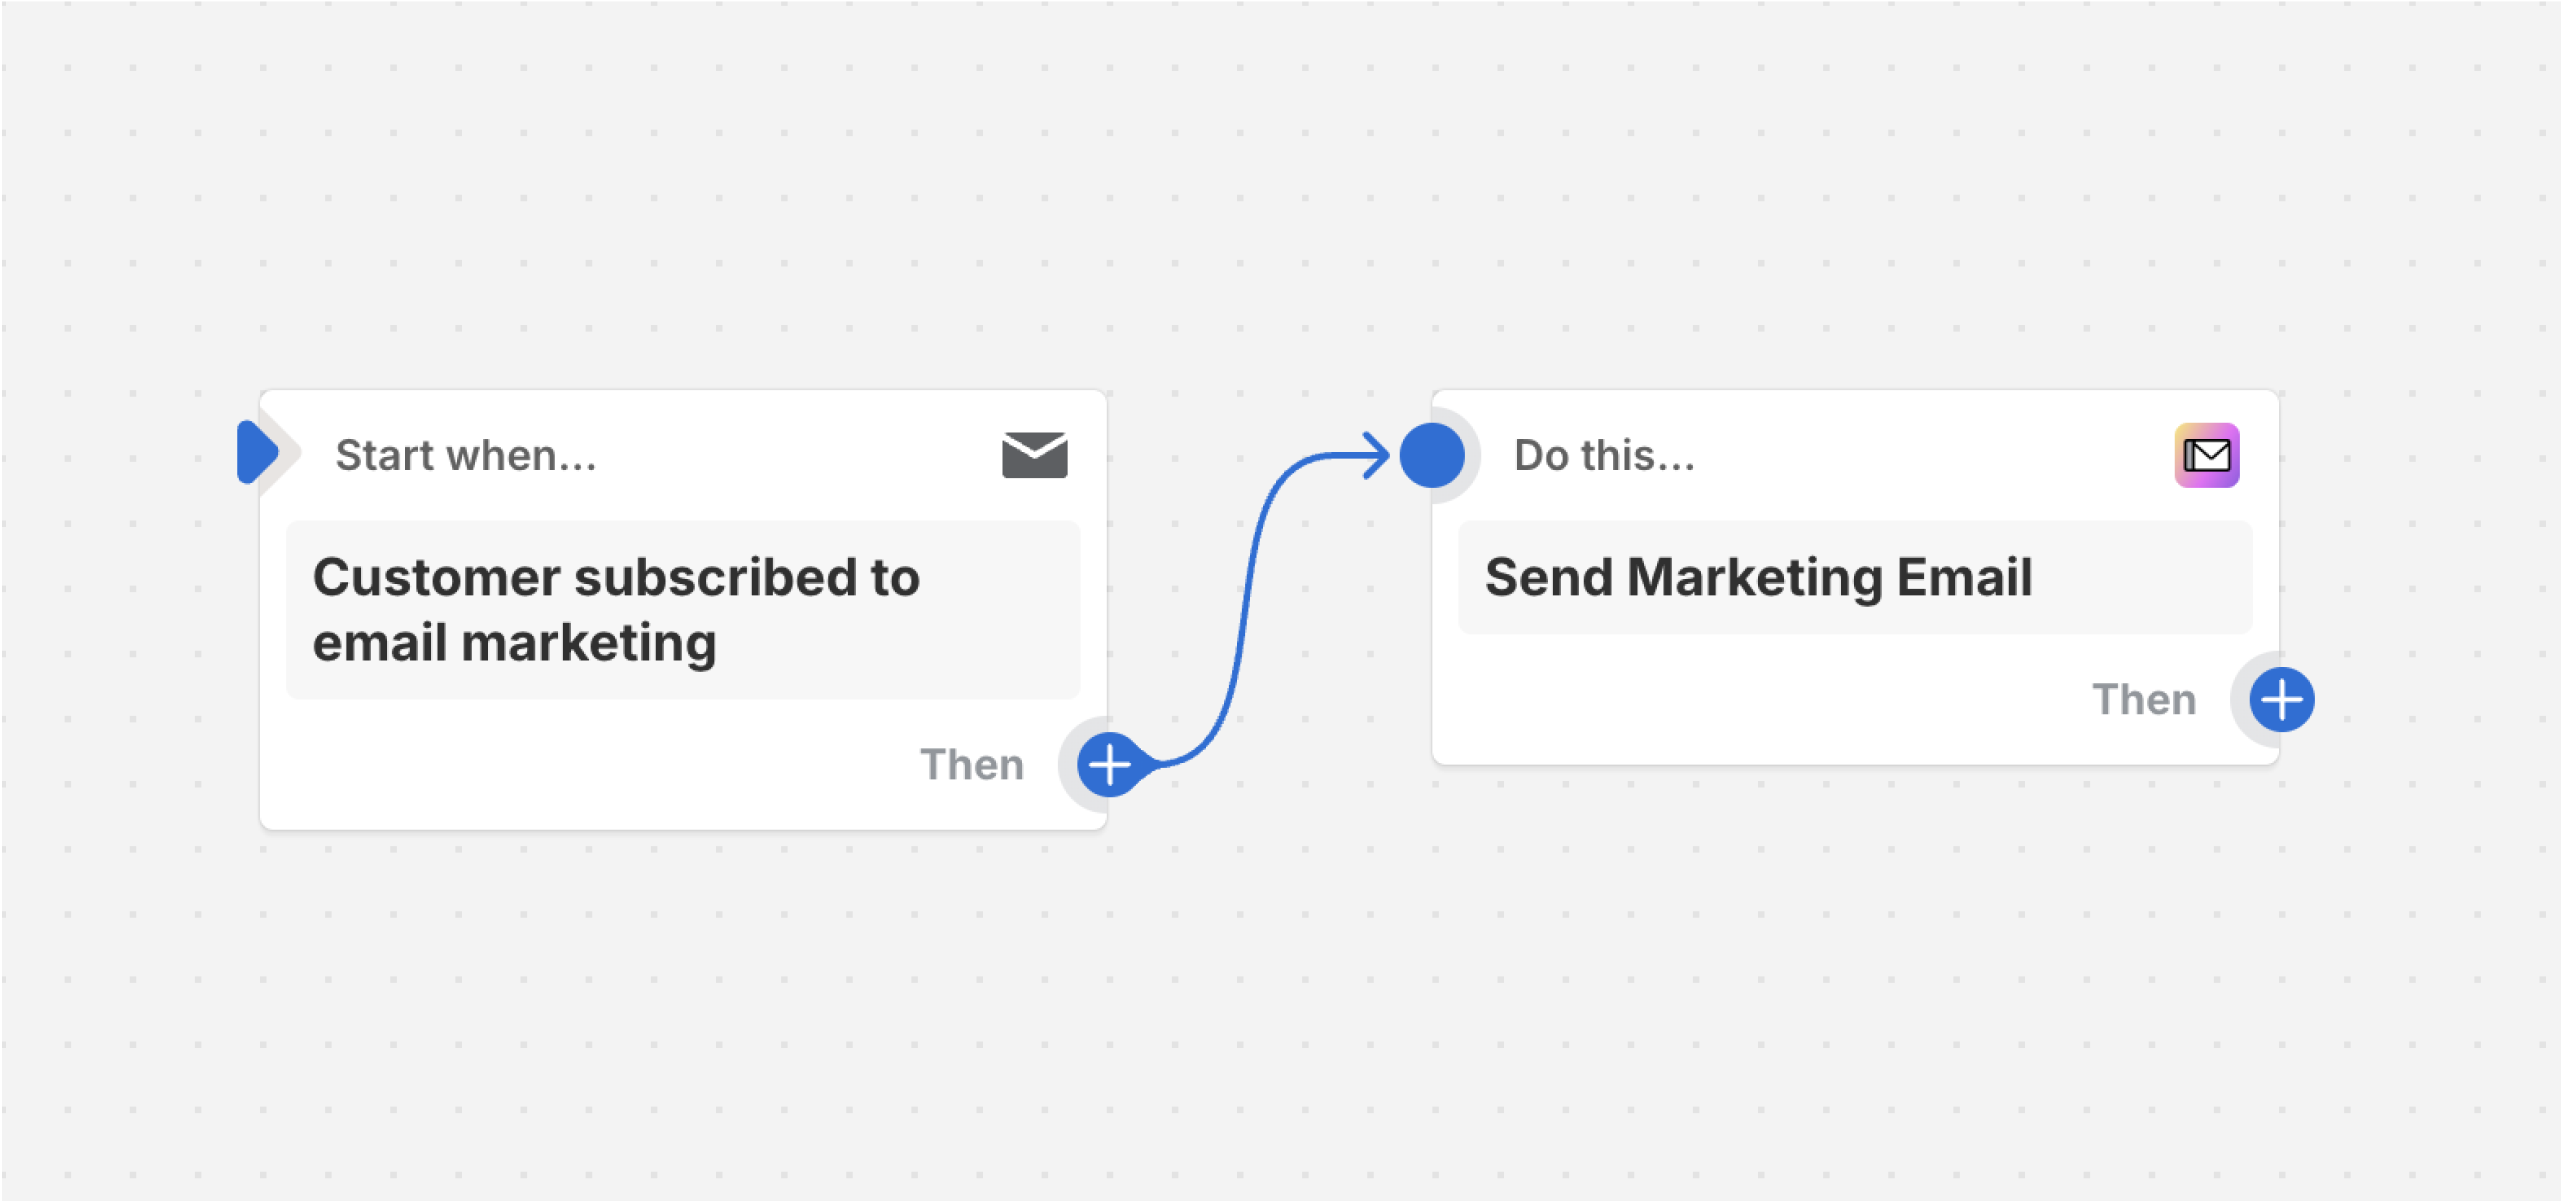 Voorbeeld van een workflow die een marketingmail verzendt nadat een klant zich heeft geabonneerd op e-mailmarketing